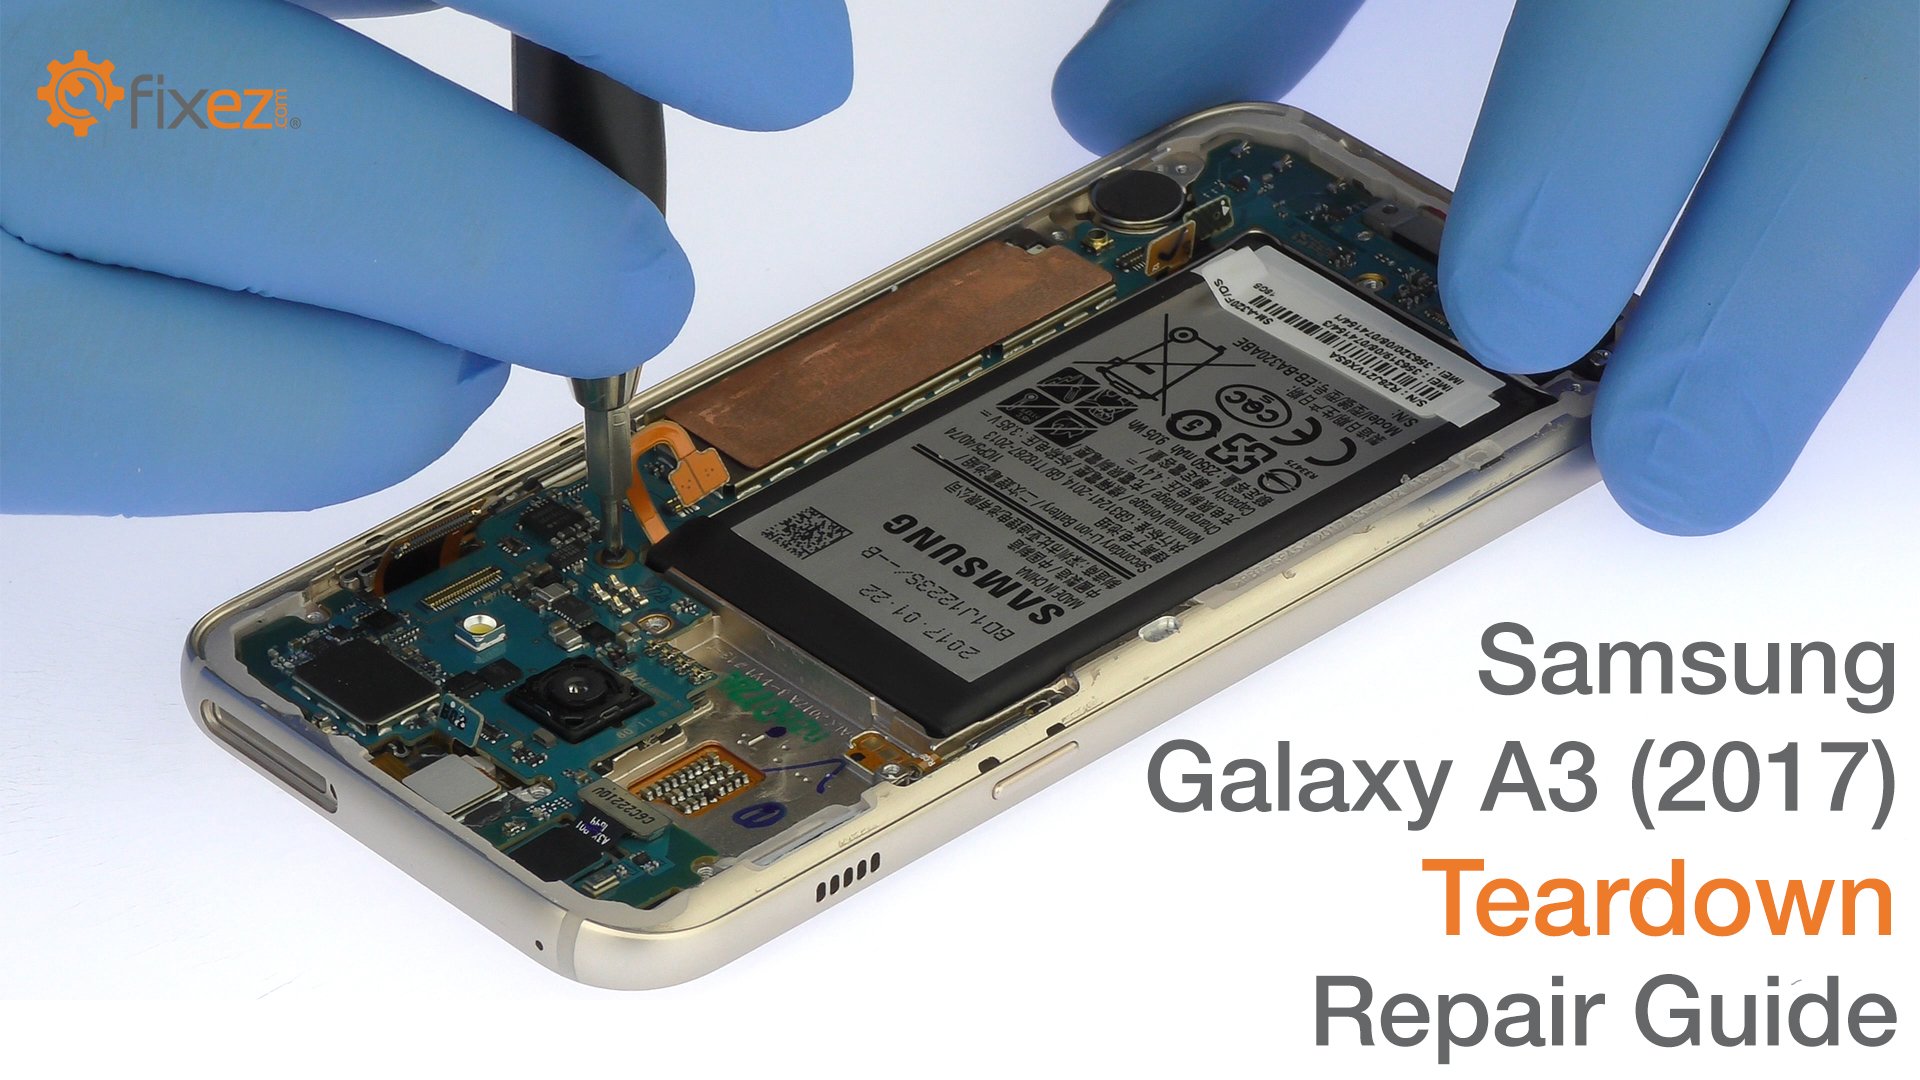 Samsung Galaxy A3 (2017) Teardown Repair Guide